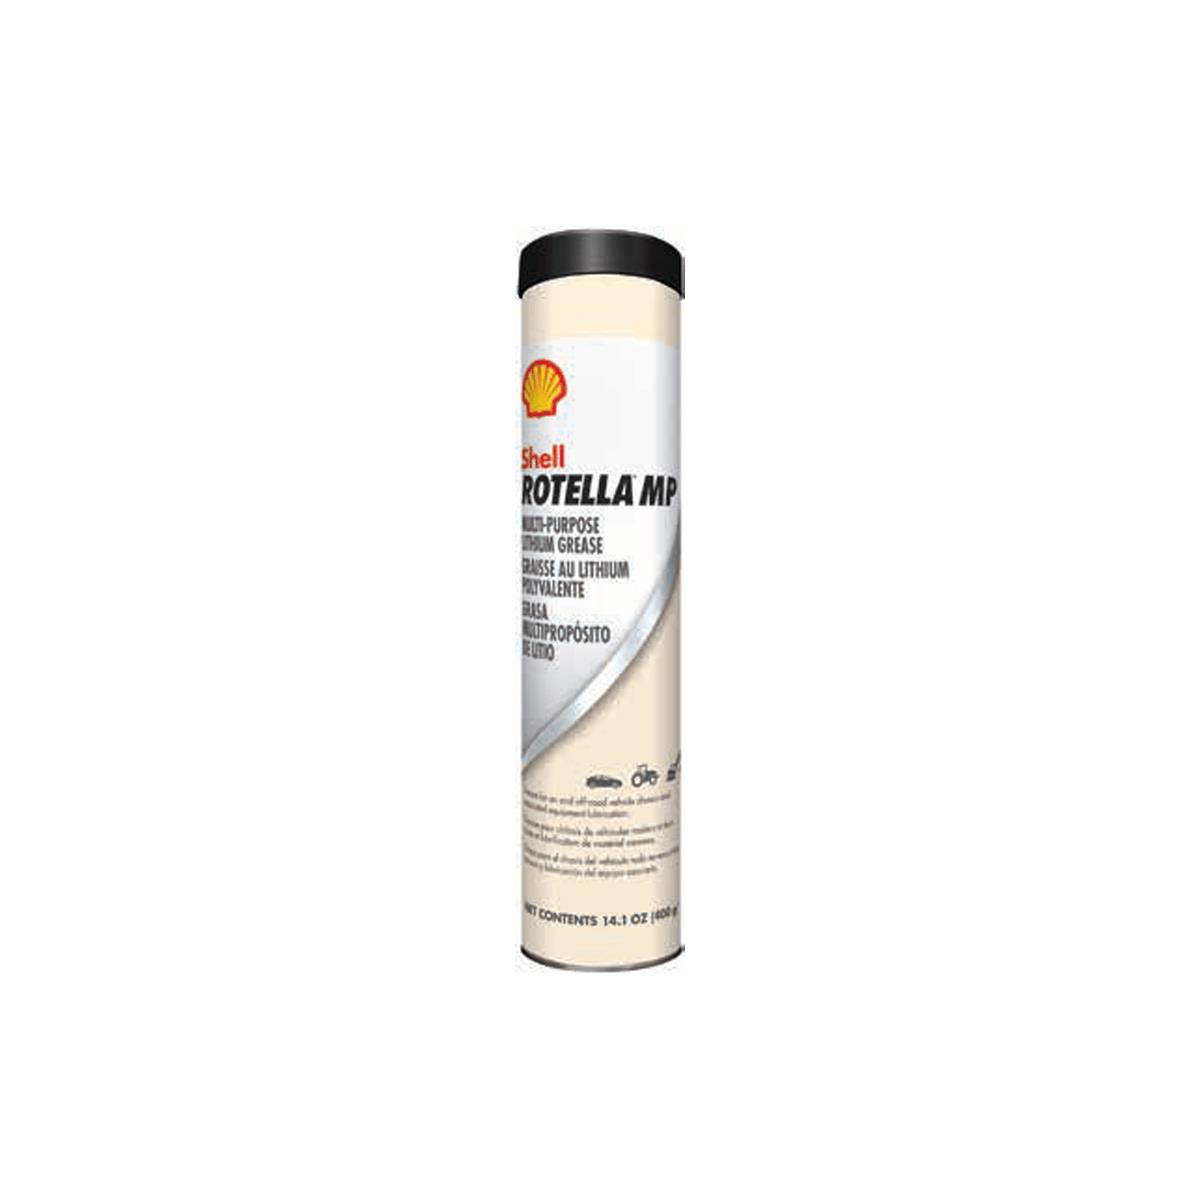 Shell ROTELLA® MP Grease 400 g